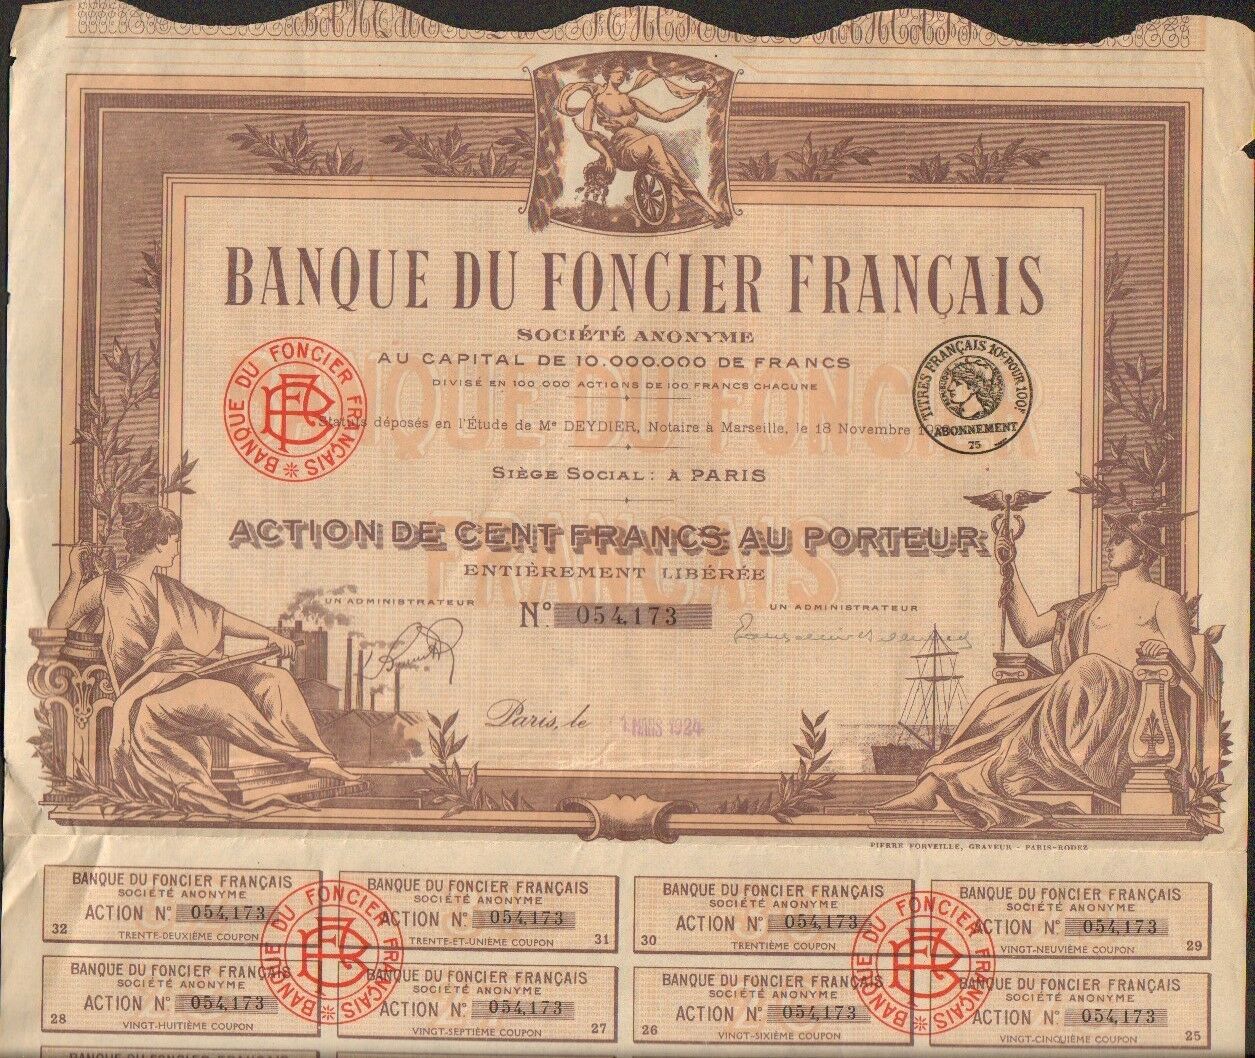  On peut voir un exemple des obligations émises par la banque du foncier français.